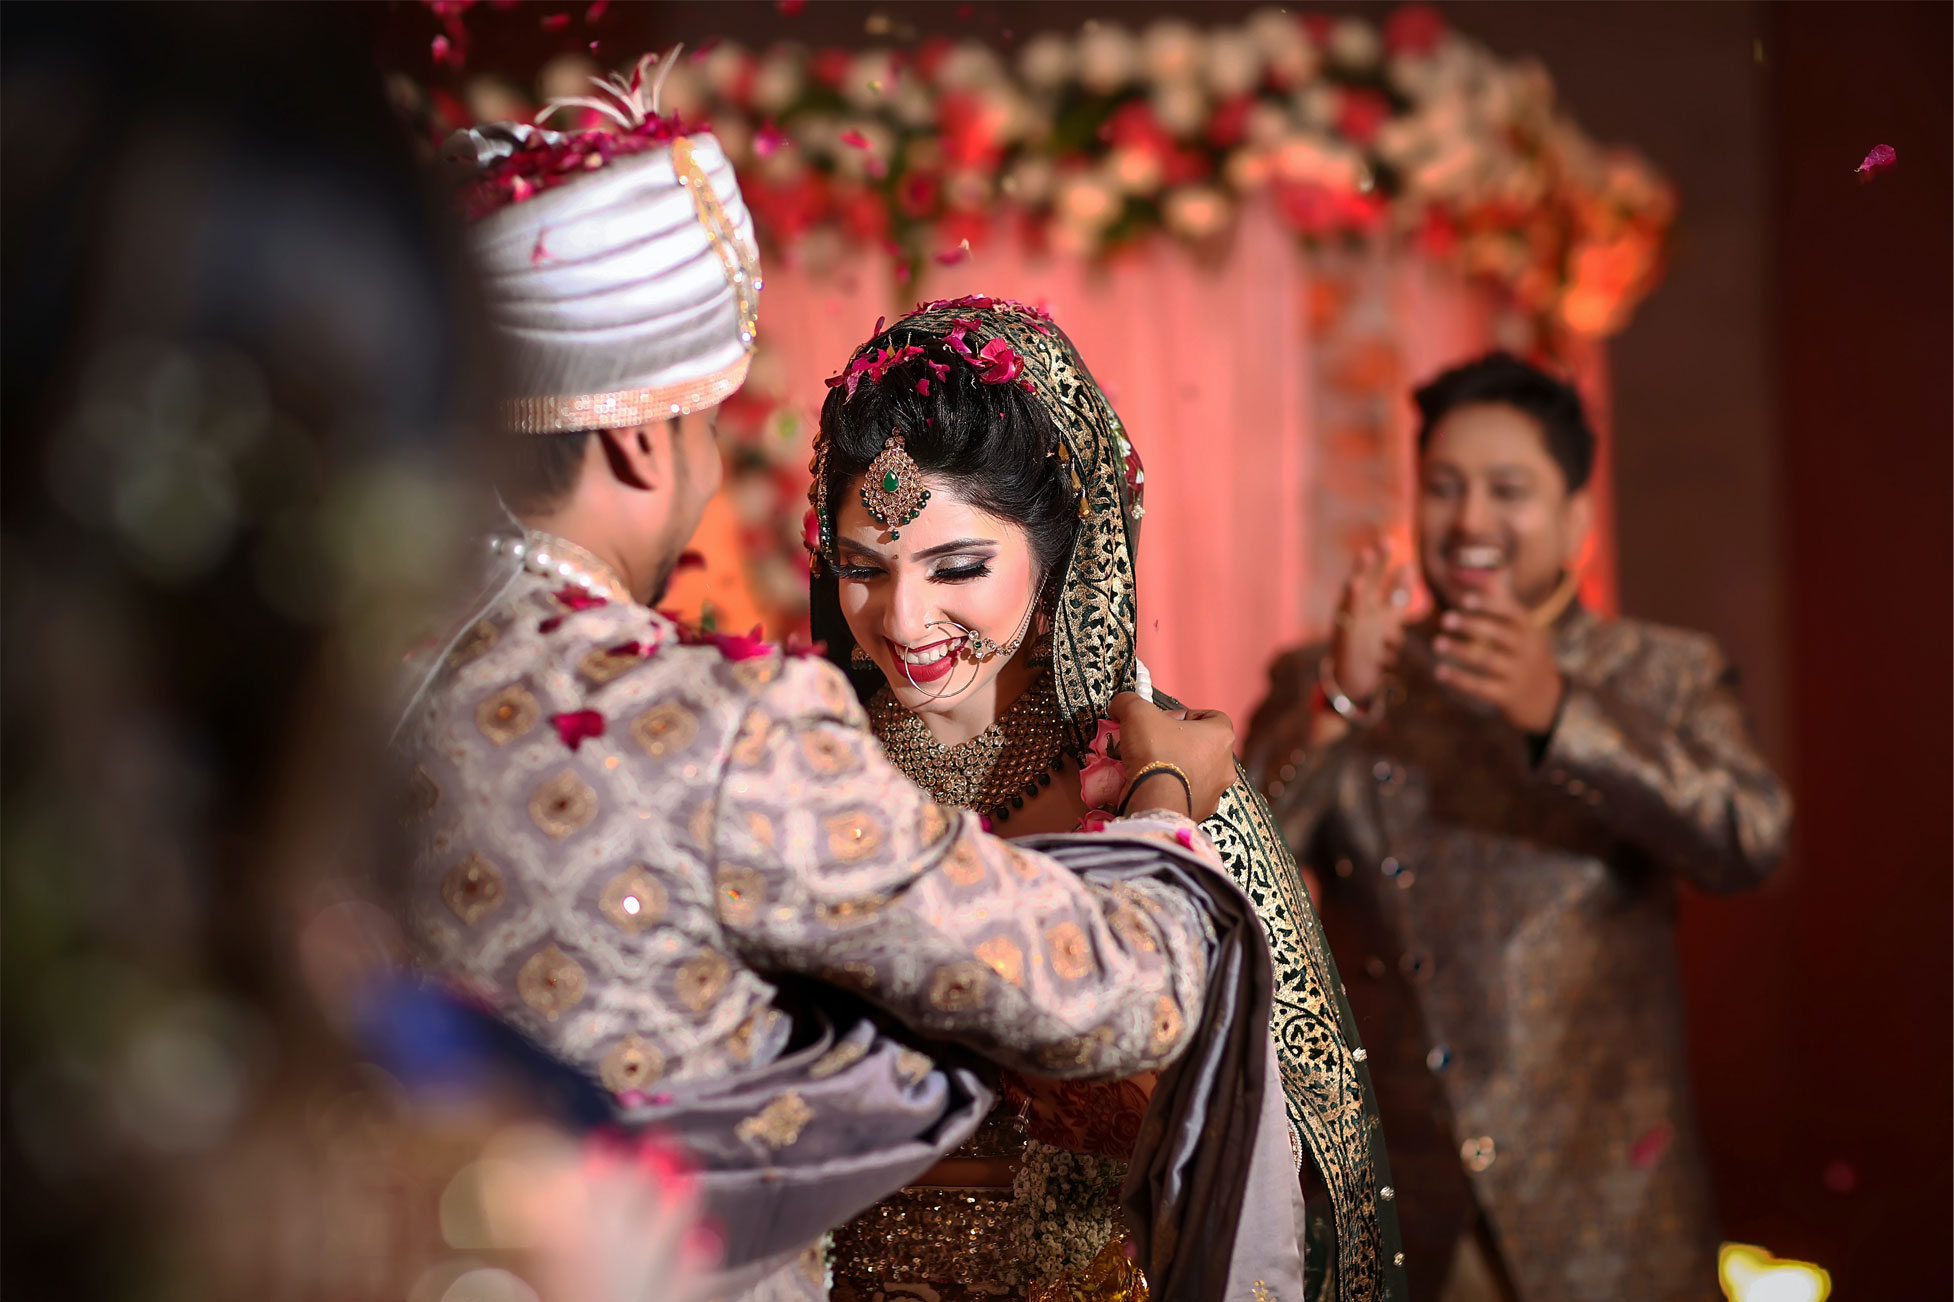 zuurstof sieraden opslaan Suman Marriage Bureau | UK's First Asian Matchmaking Service